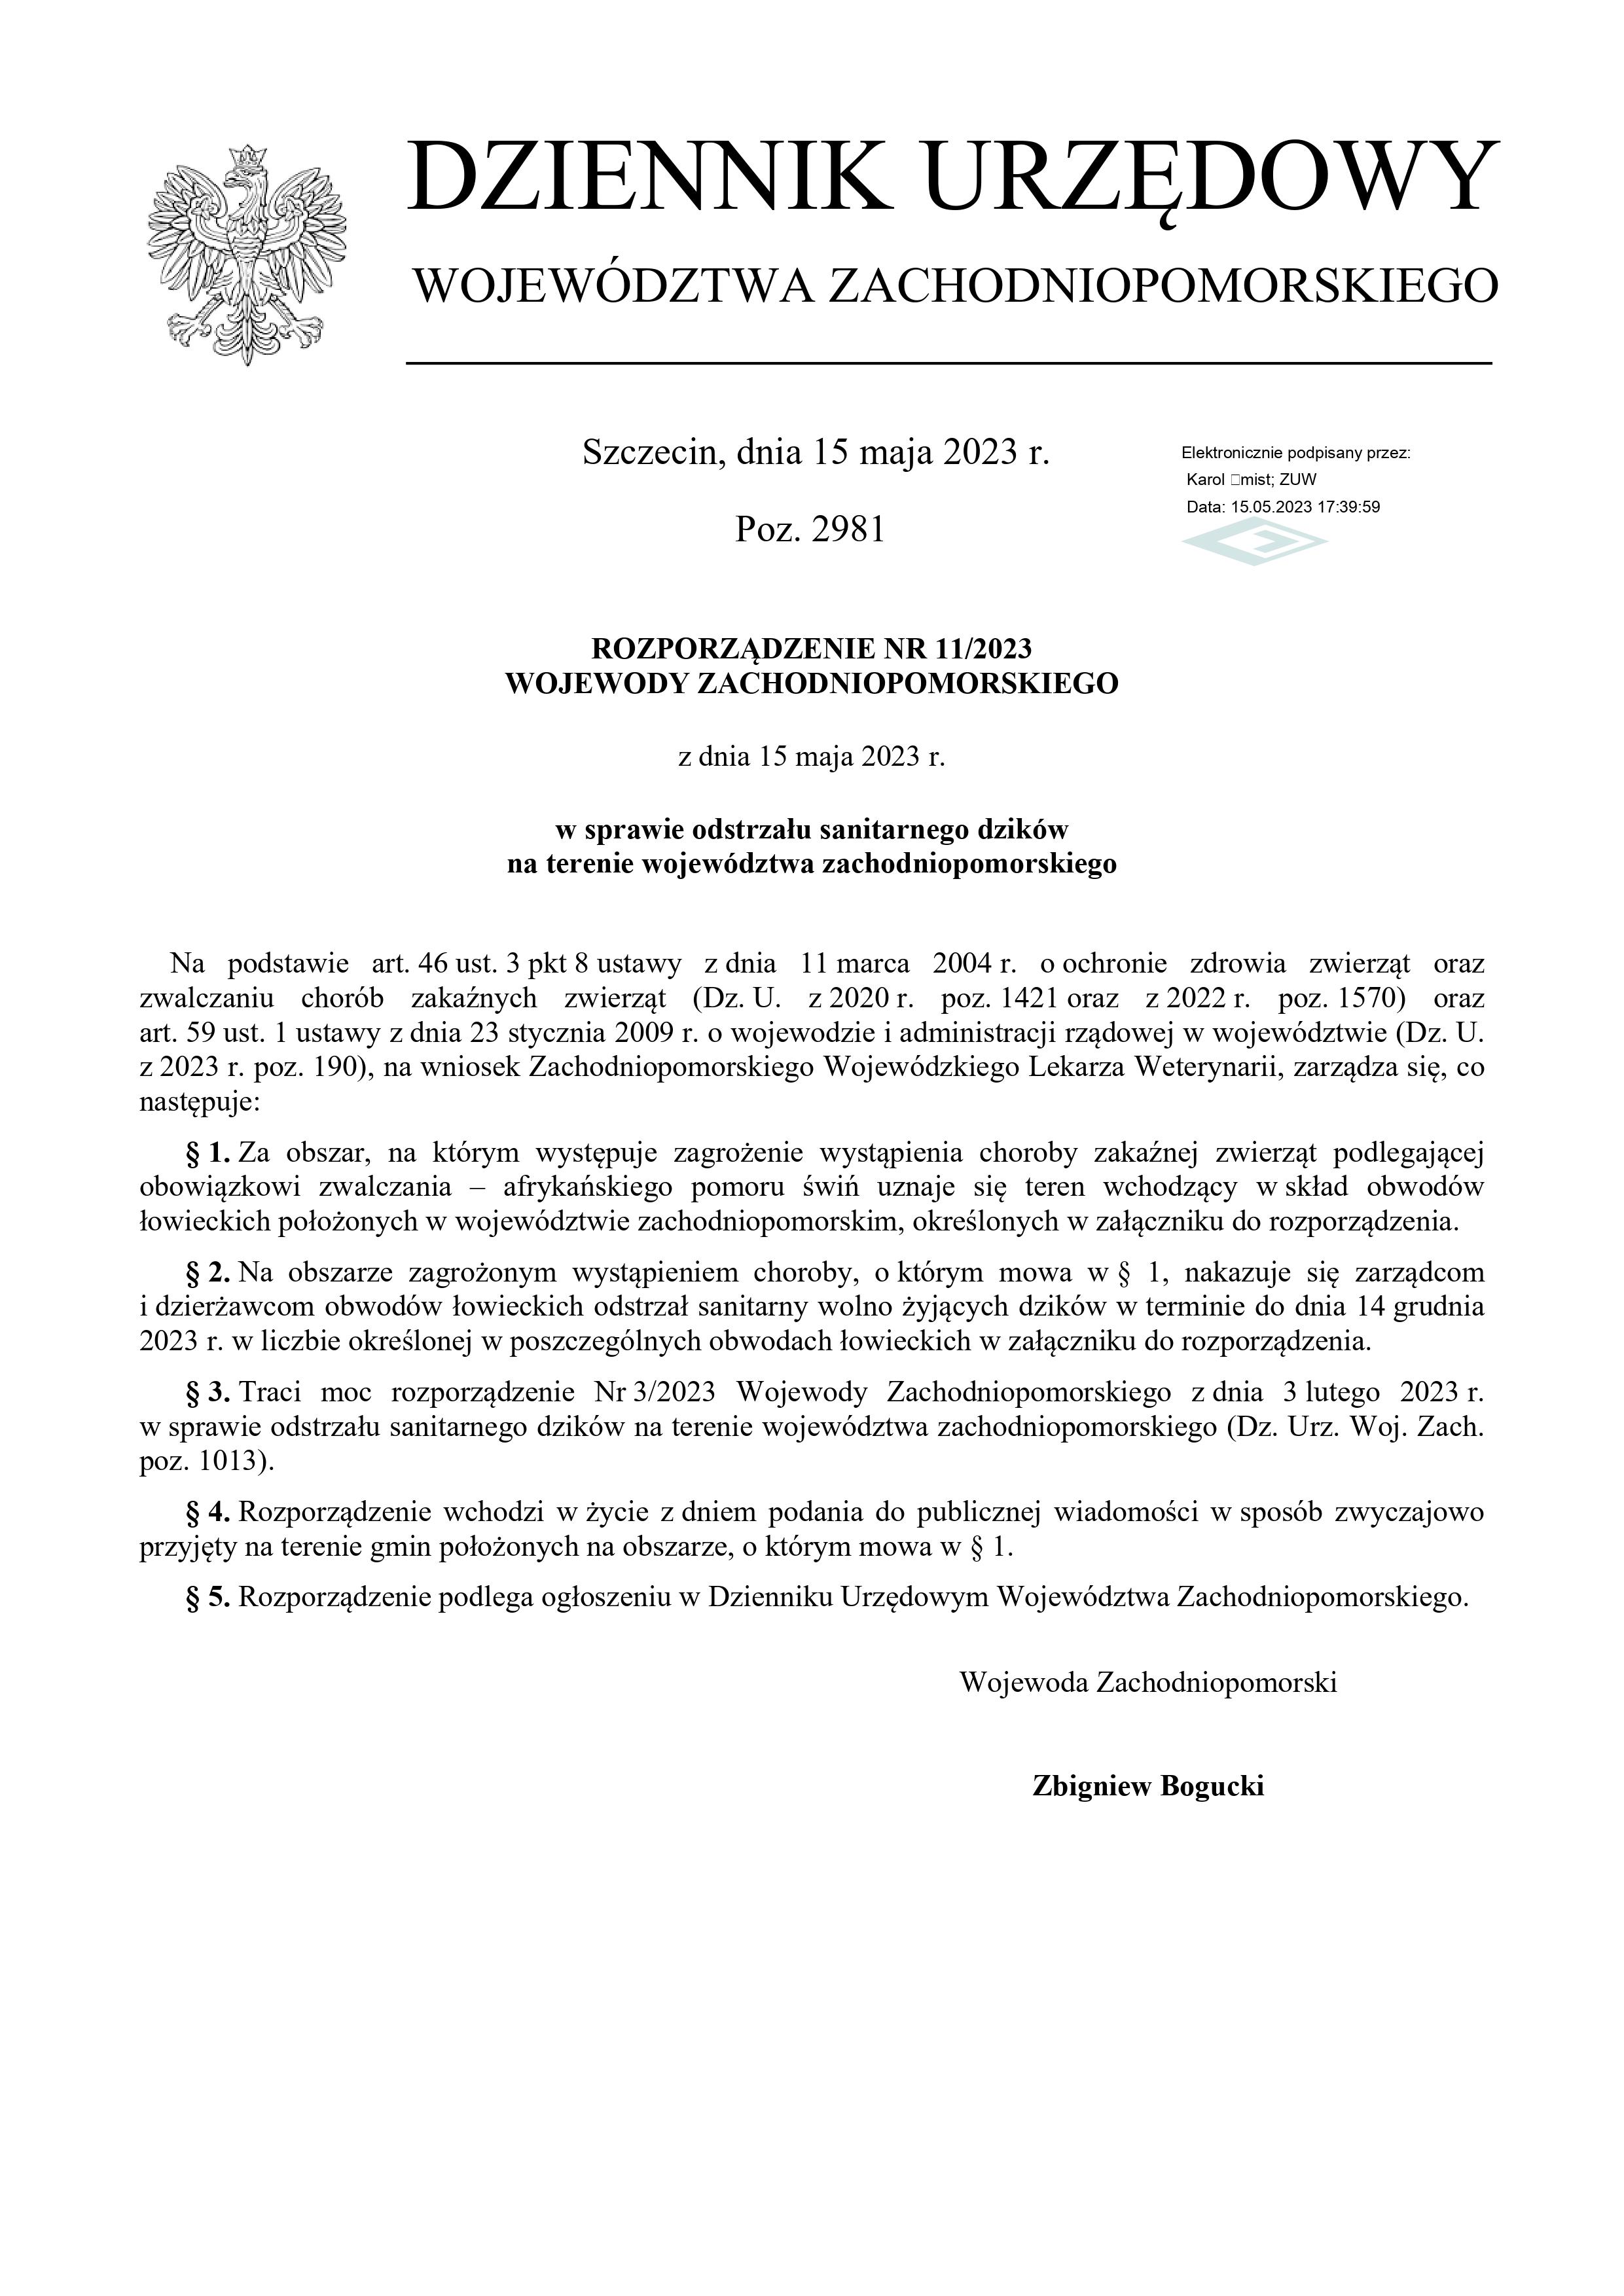 treść rozporządzenia nr 11/2023 Wojewody Zachodniopomorskiego